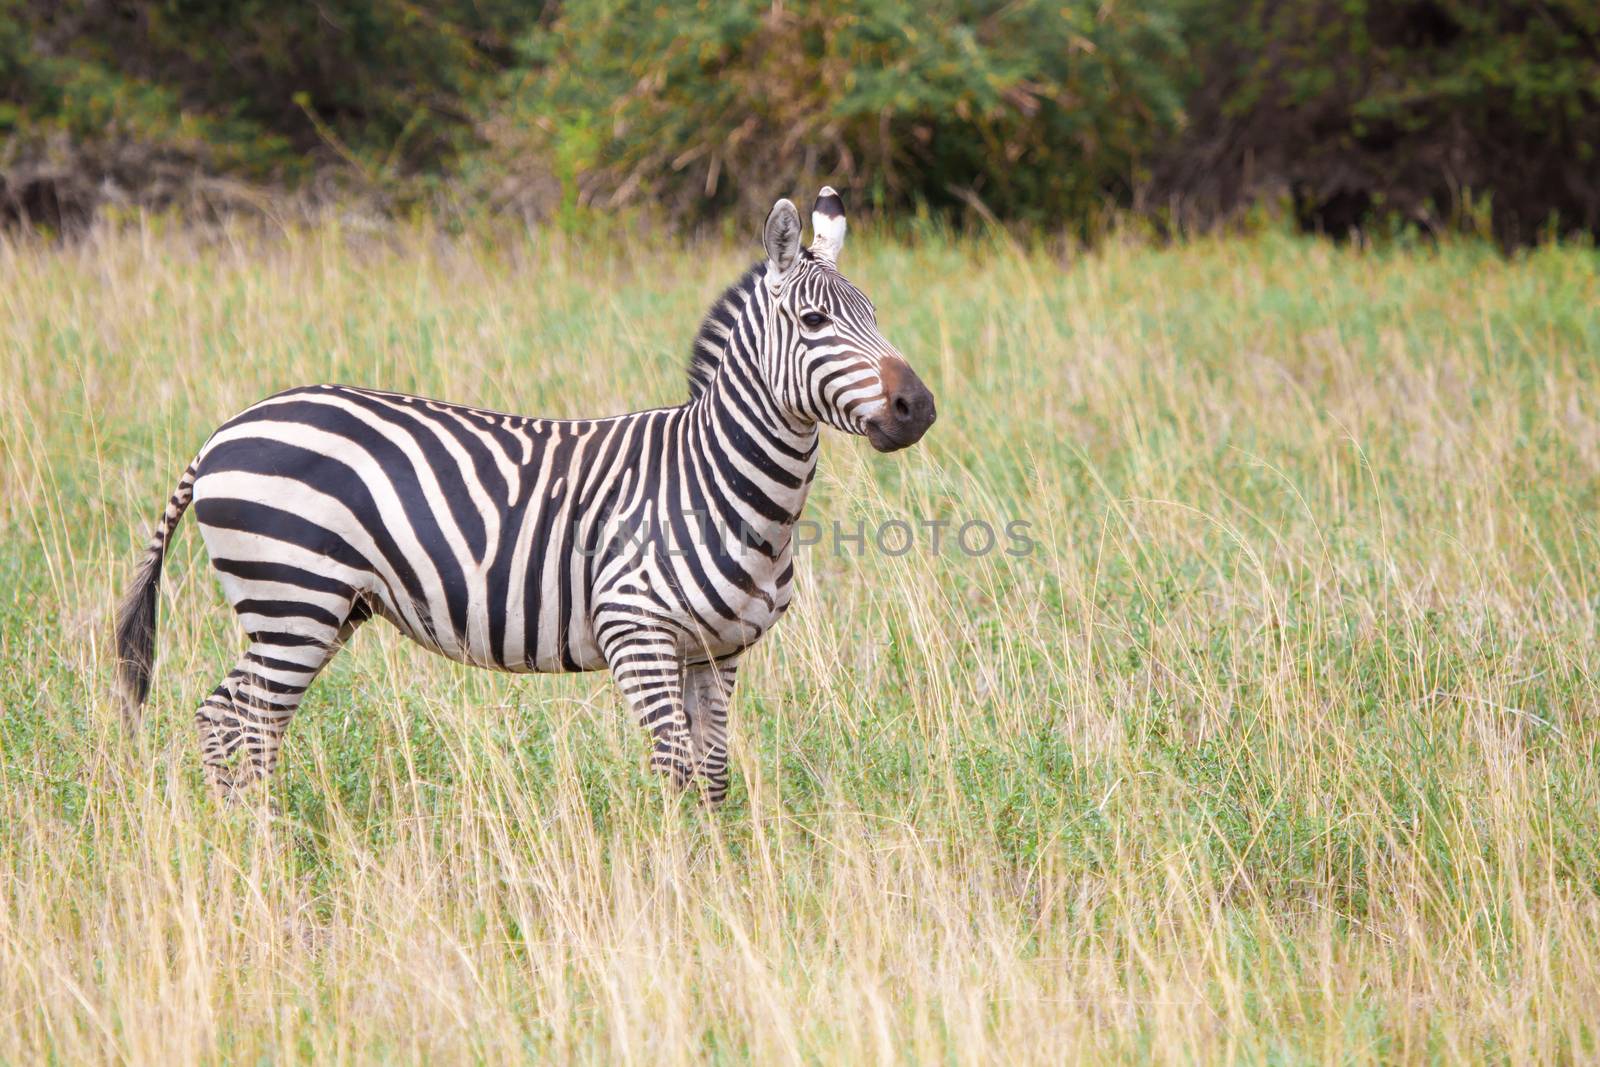 Zebra in the grassland in Kenya, on safari